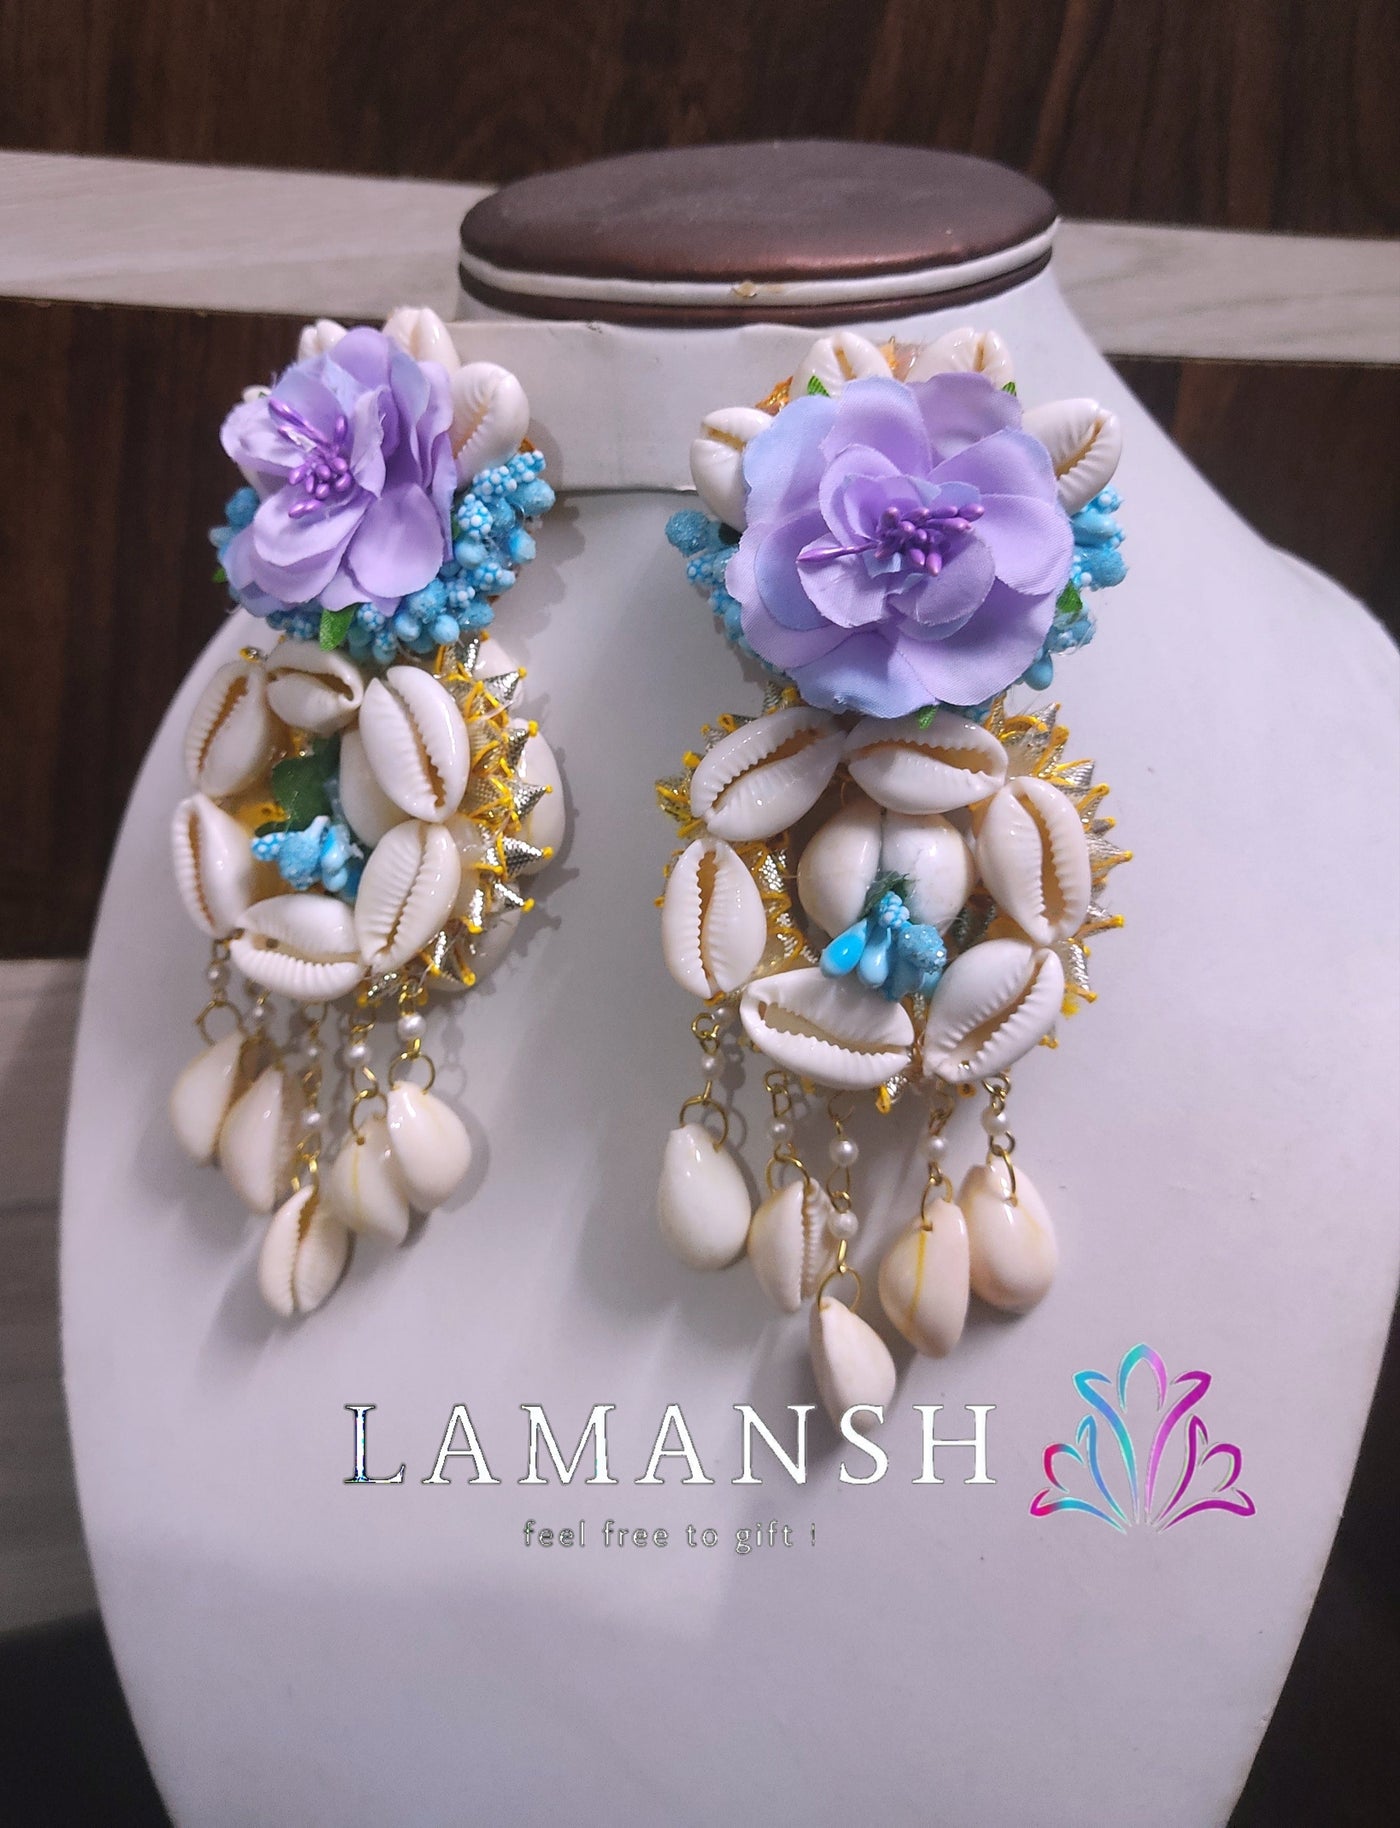 LAMANSH Earrings set Sky Blue / Standard / Shells 🐚 Style LAMANSH® Floral Shells 🐚Earrings Set for Bride